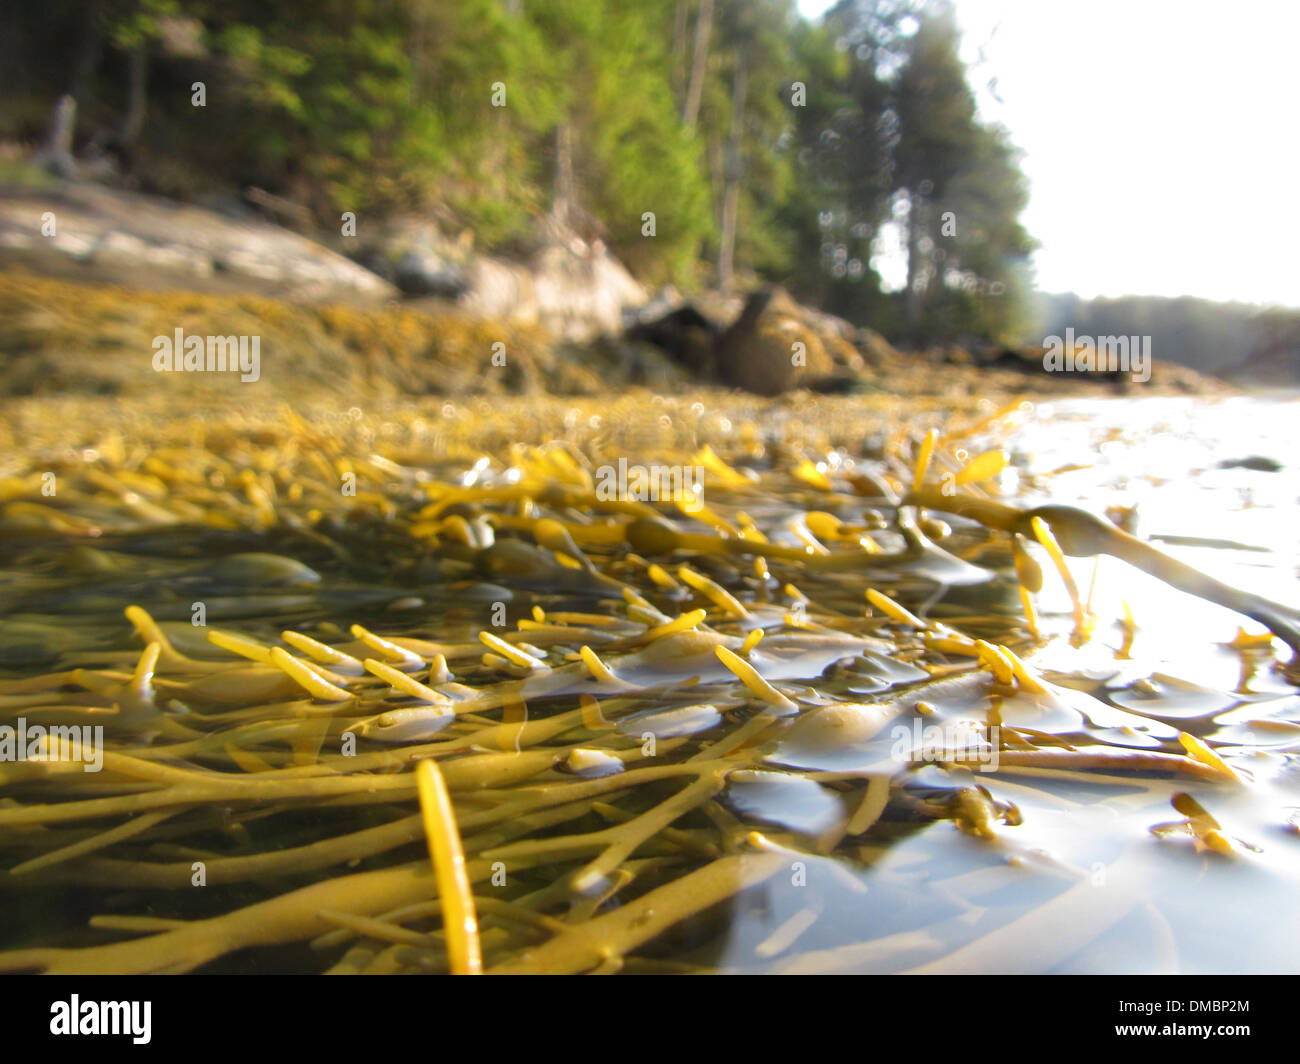 Schwimmenden Algen oder Rockweed in Maine, USA. Ascophyllum Nodosum ist eine große, gemeinsame Braunalge (Phaeophyceae) Stockfoto